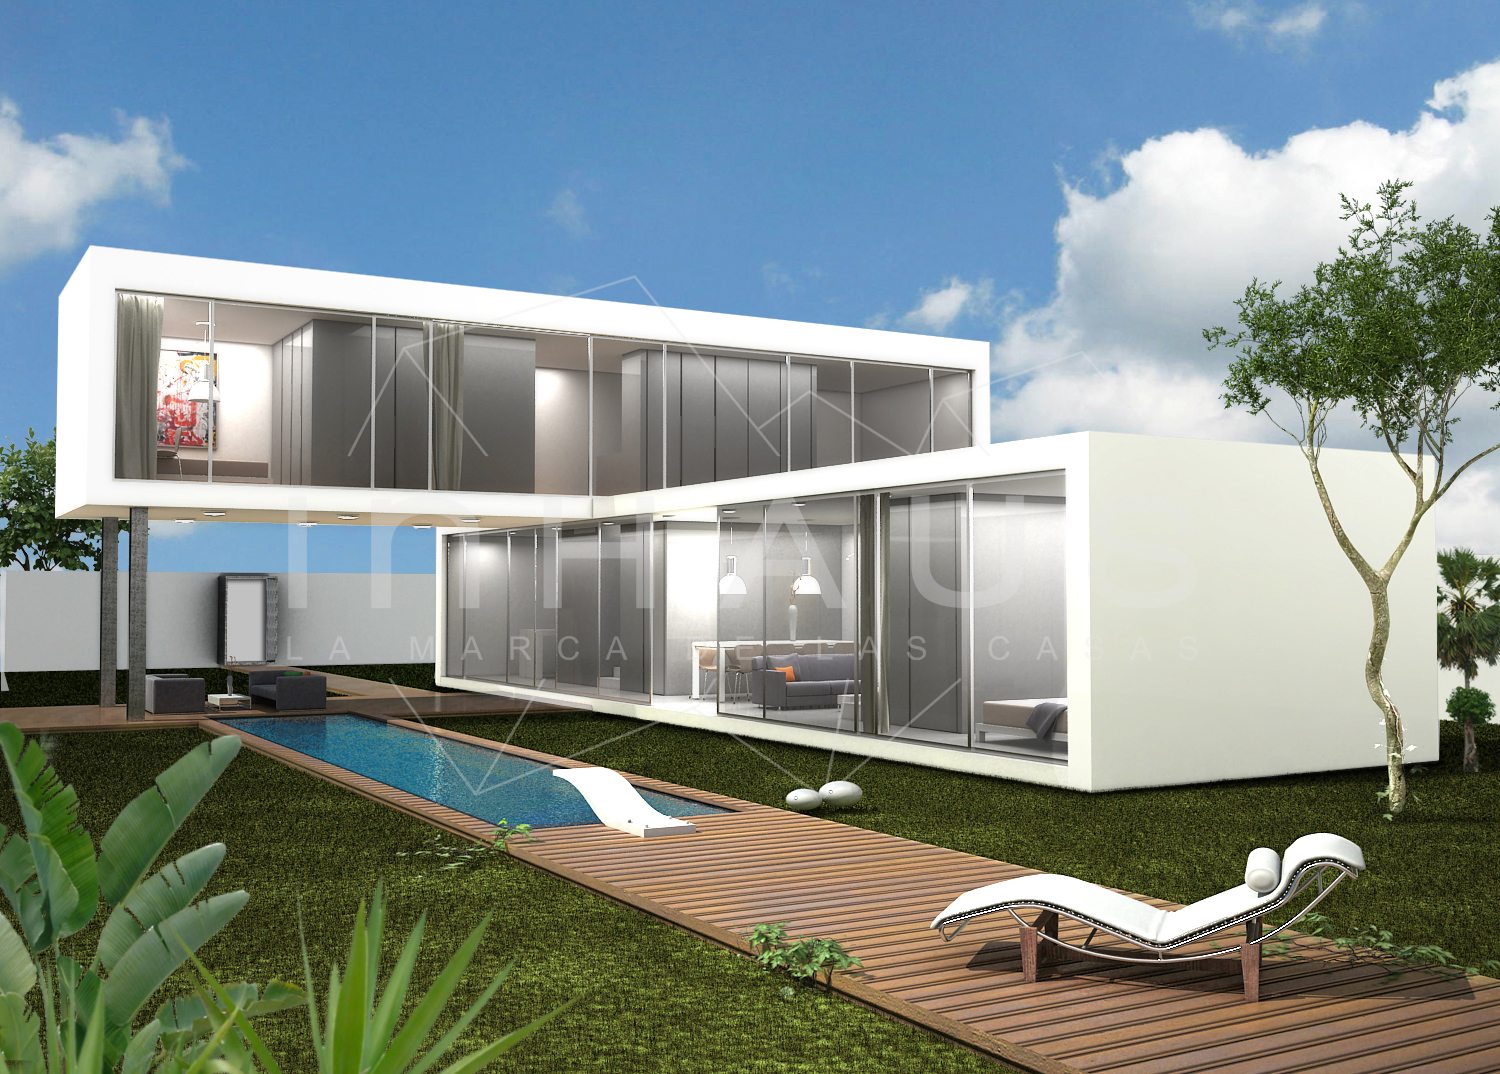 Casa modular barcelona de dise o moderno inhaus for Casa moderna jardines